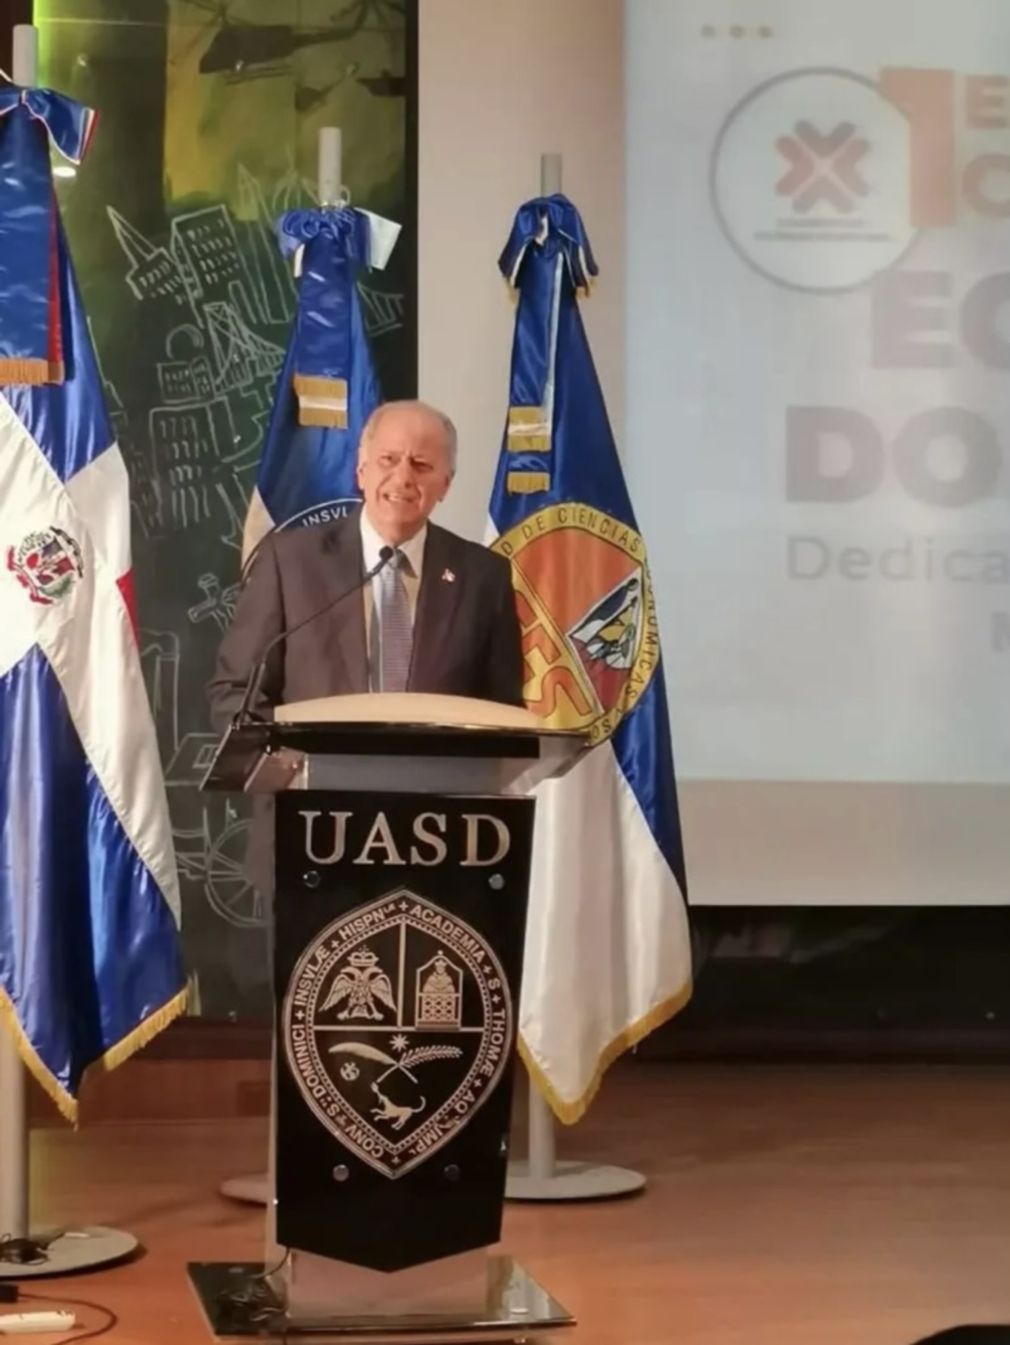 ·        El ex vicerrector administrativo de la UASD José Serulle Ramia dictó una conferencia en el marco de la celebración del Primer Congreso de Economía Dominicana, y a propósito de la conmemoración del Día Nacional del Economista.